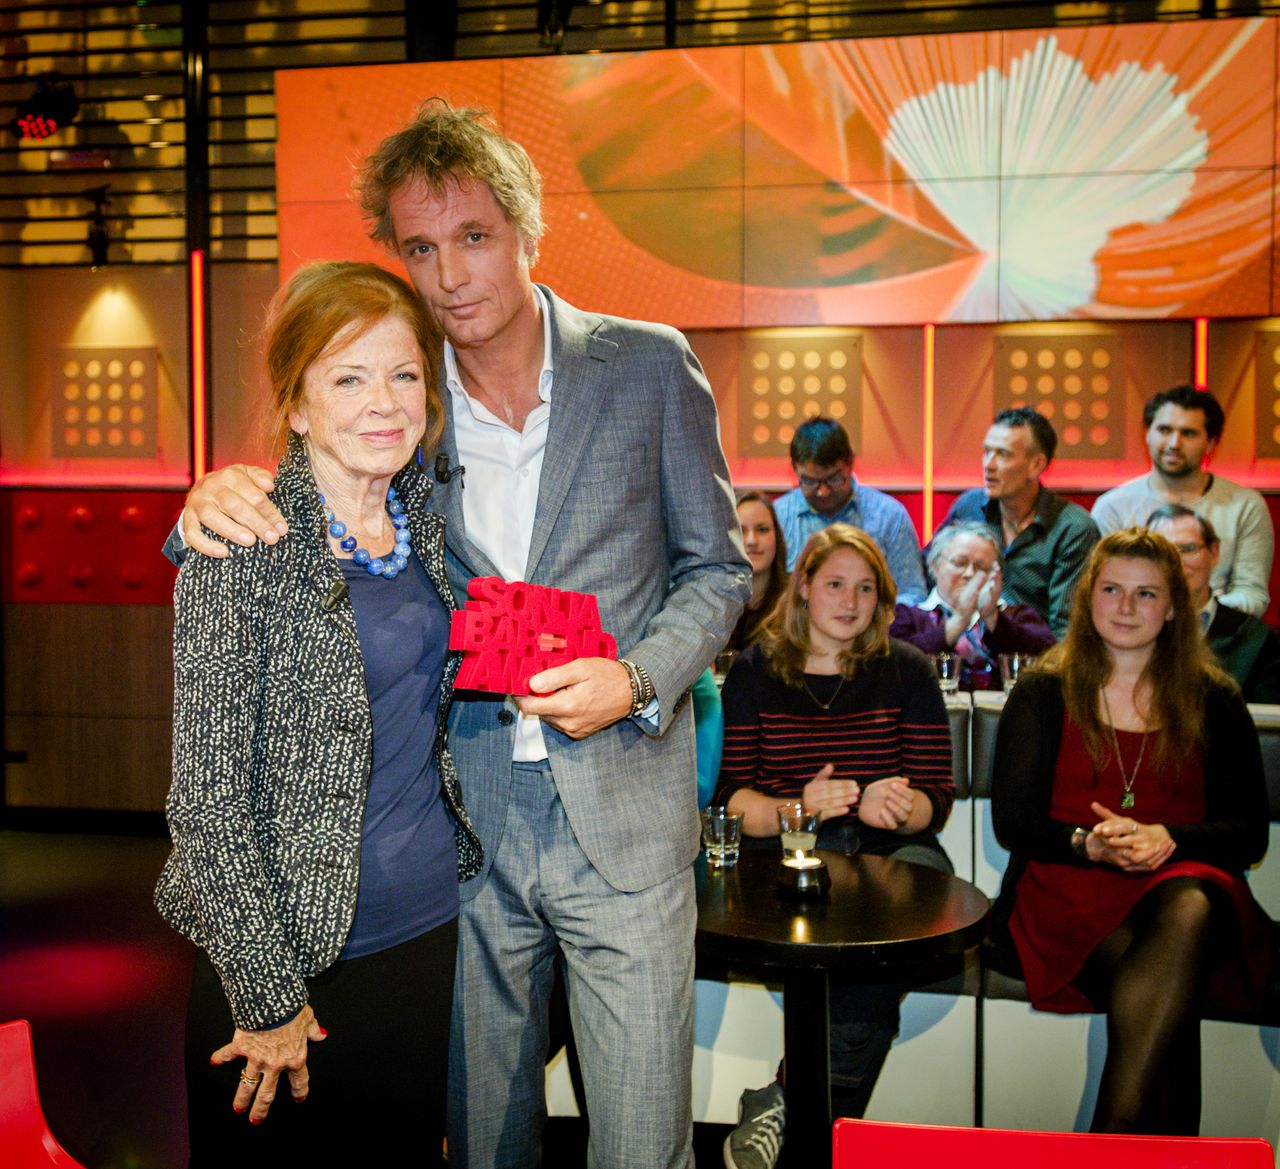 Sonja Barend en winnaar Jeroen Pauw (interview: Frans Timmermans, Pauw) met de Sonja Barend Award, de prijs voor het beste tv-interview, in de studio van DWDD. Het gesprek met Pauw was volgens de jury het spannendste van het seizoen.